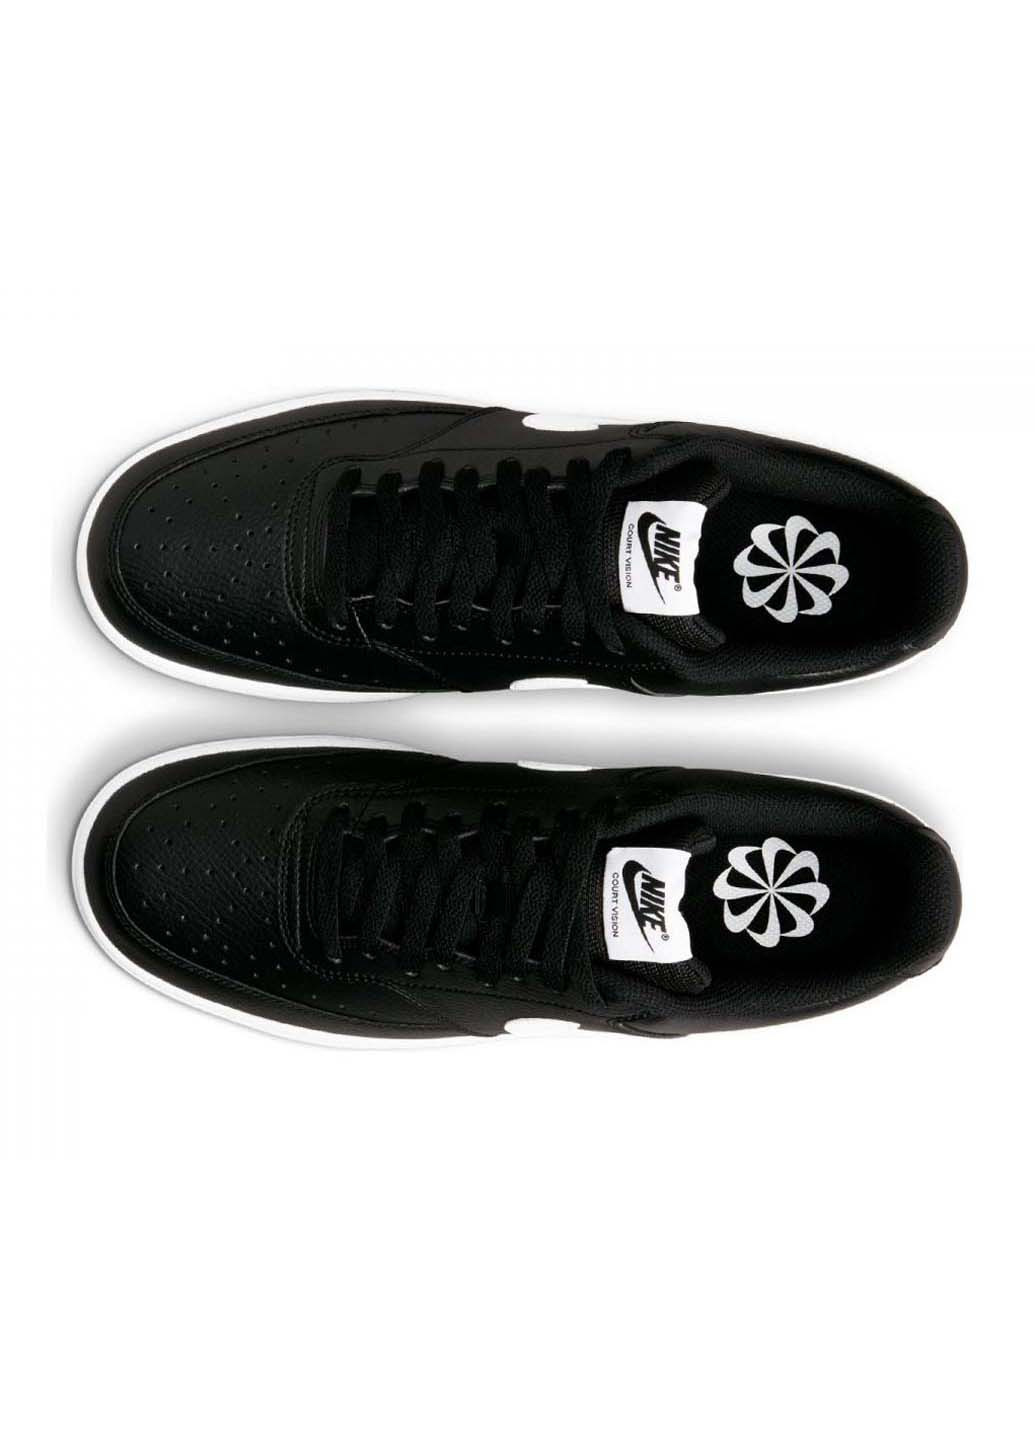 Черные демисезонные кроссовки Nike Court Vision Lo Nn